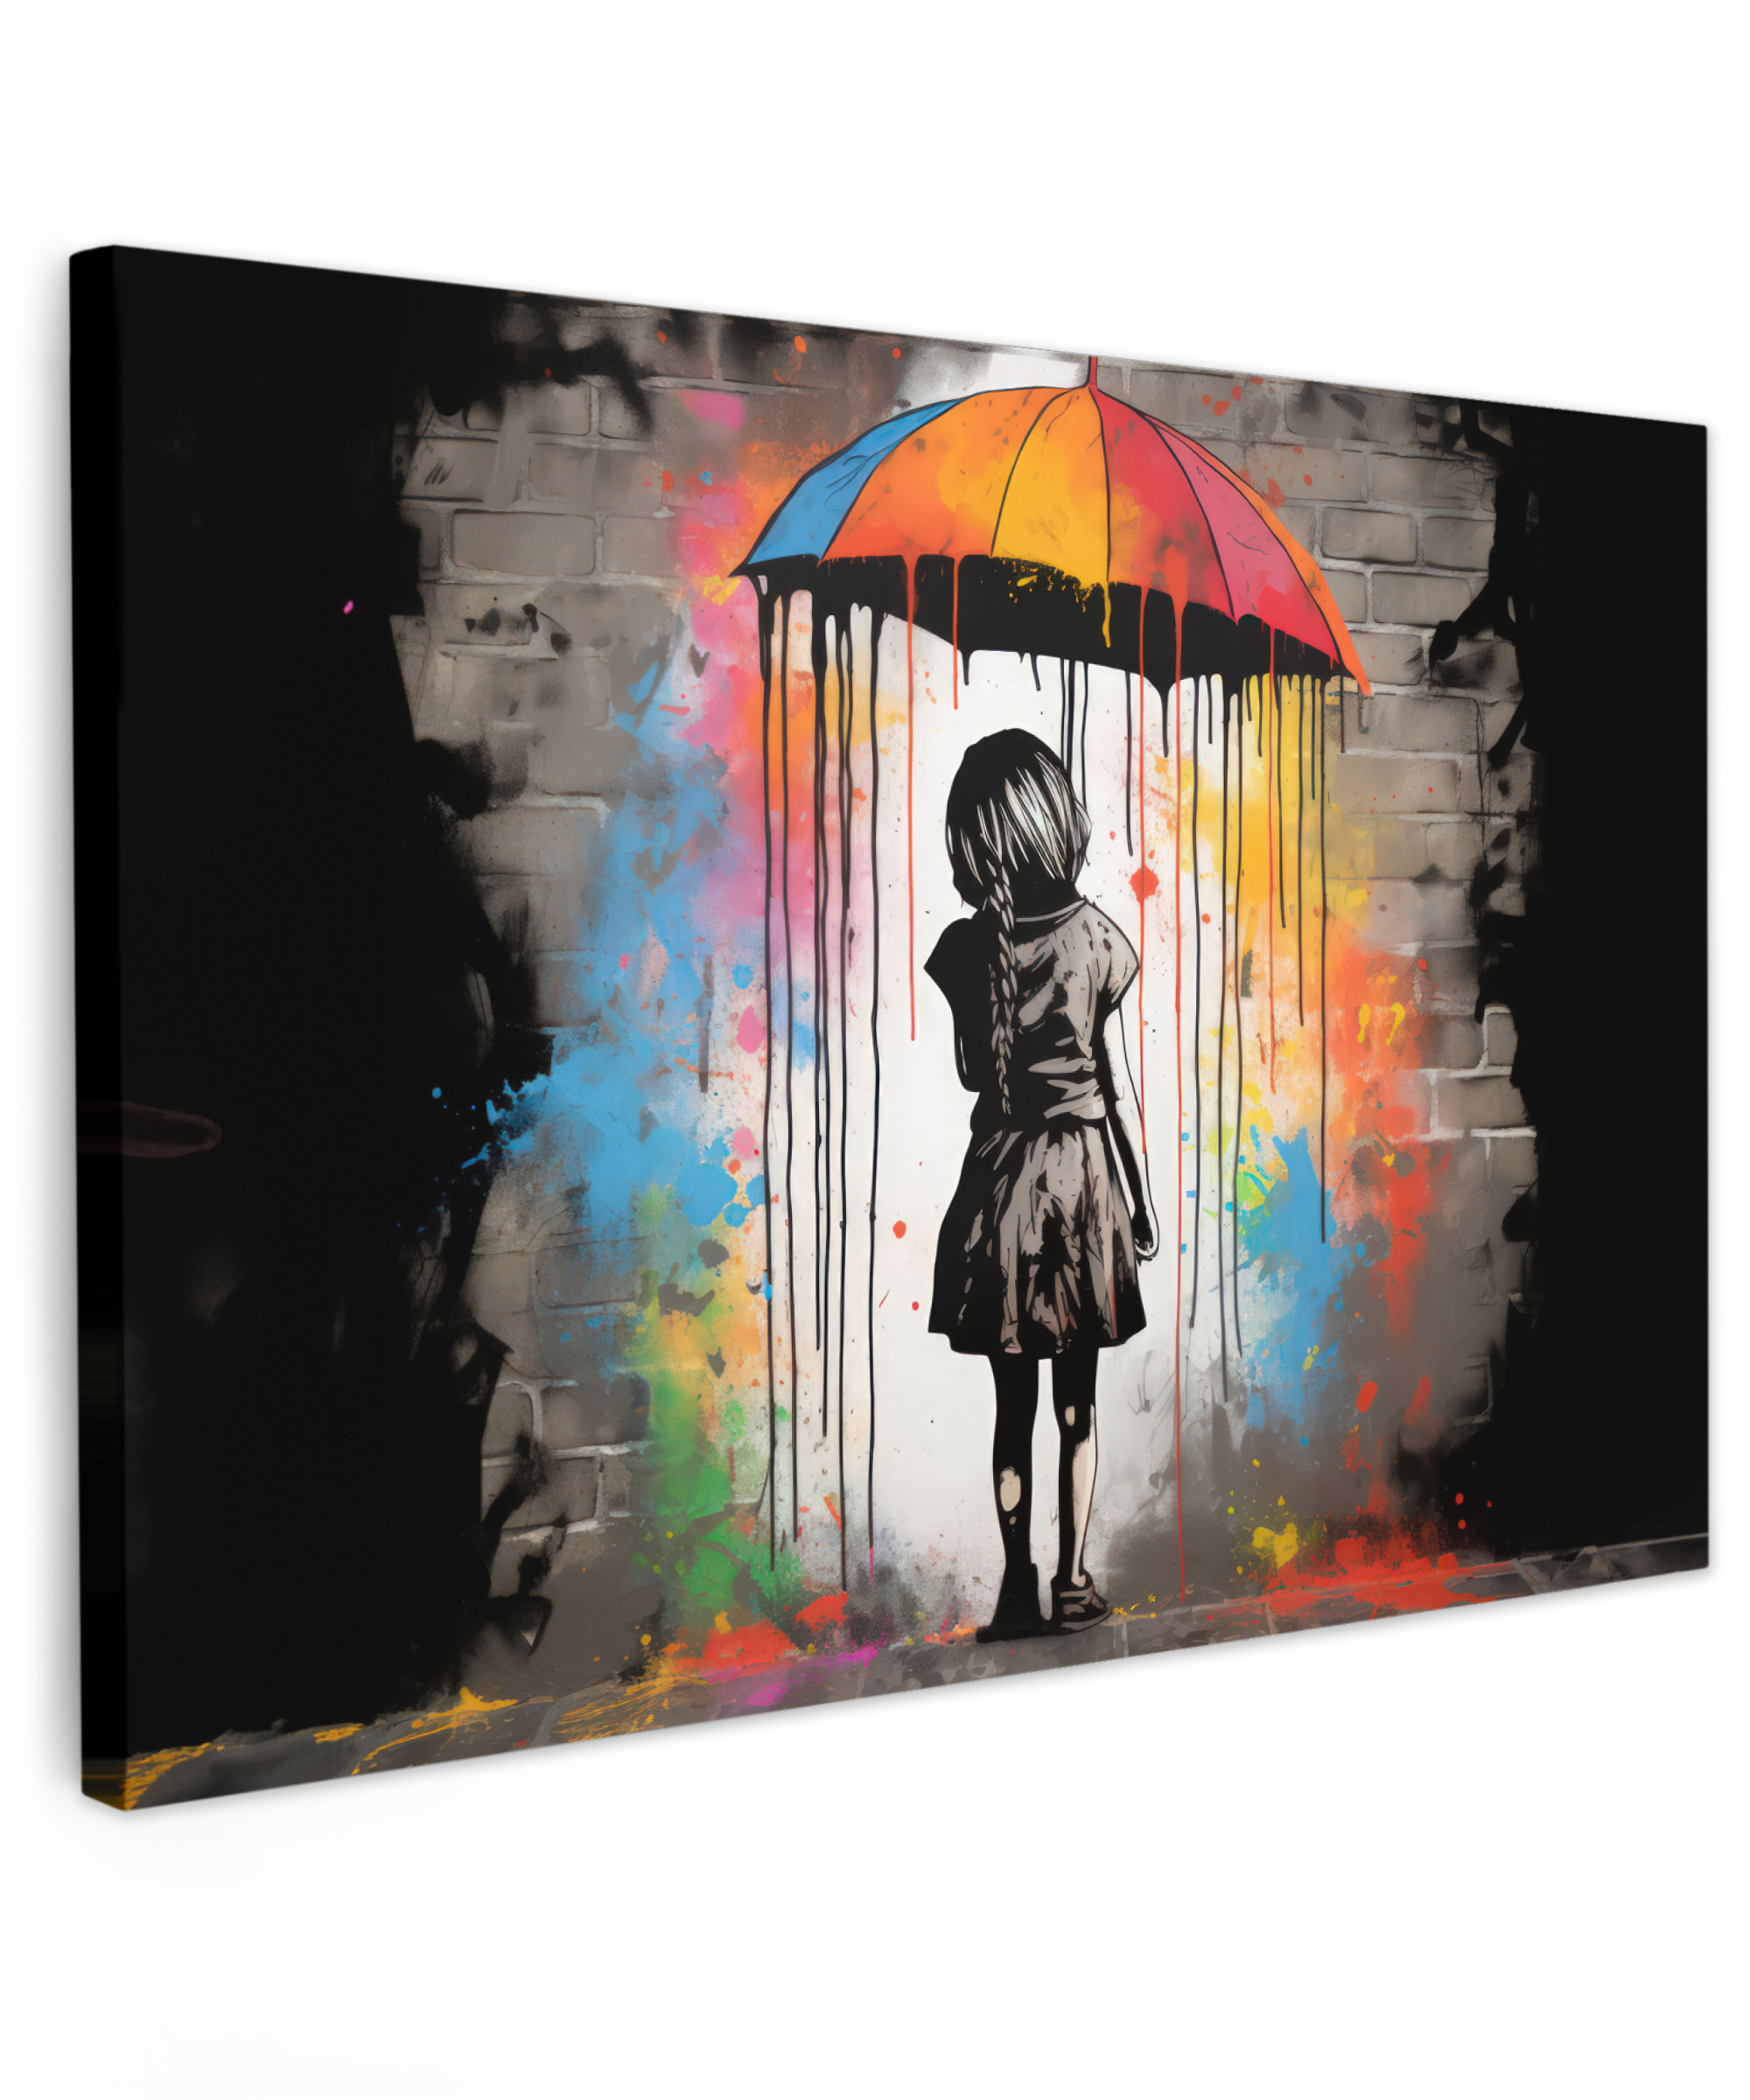 Tableau sur toile - Fille - Art - Parapluie - Graffiti - Couleurs - Mur